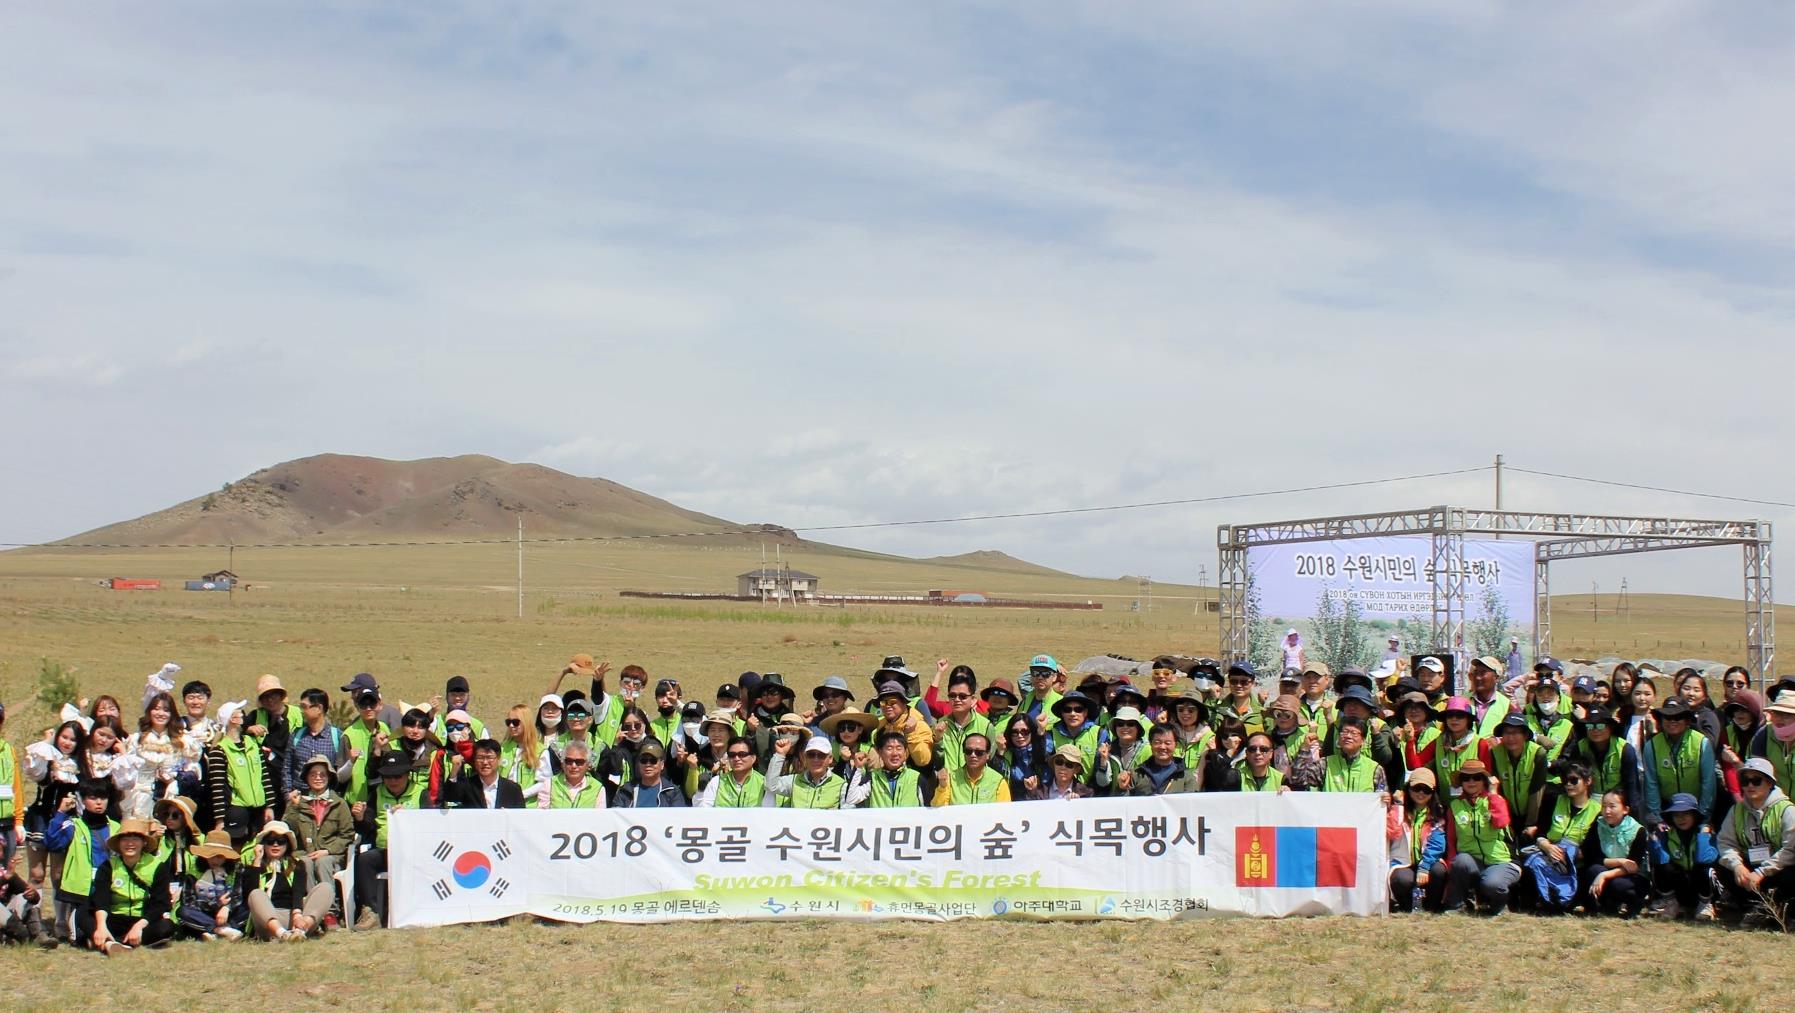 몽골 ‘수원시민의 숲’ 조성에 아주가족 참여